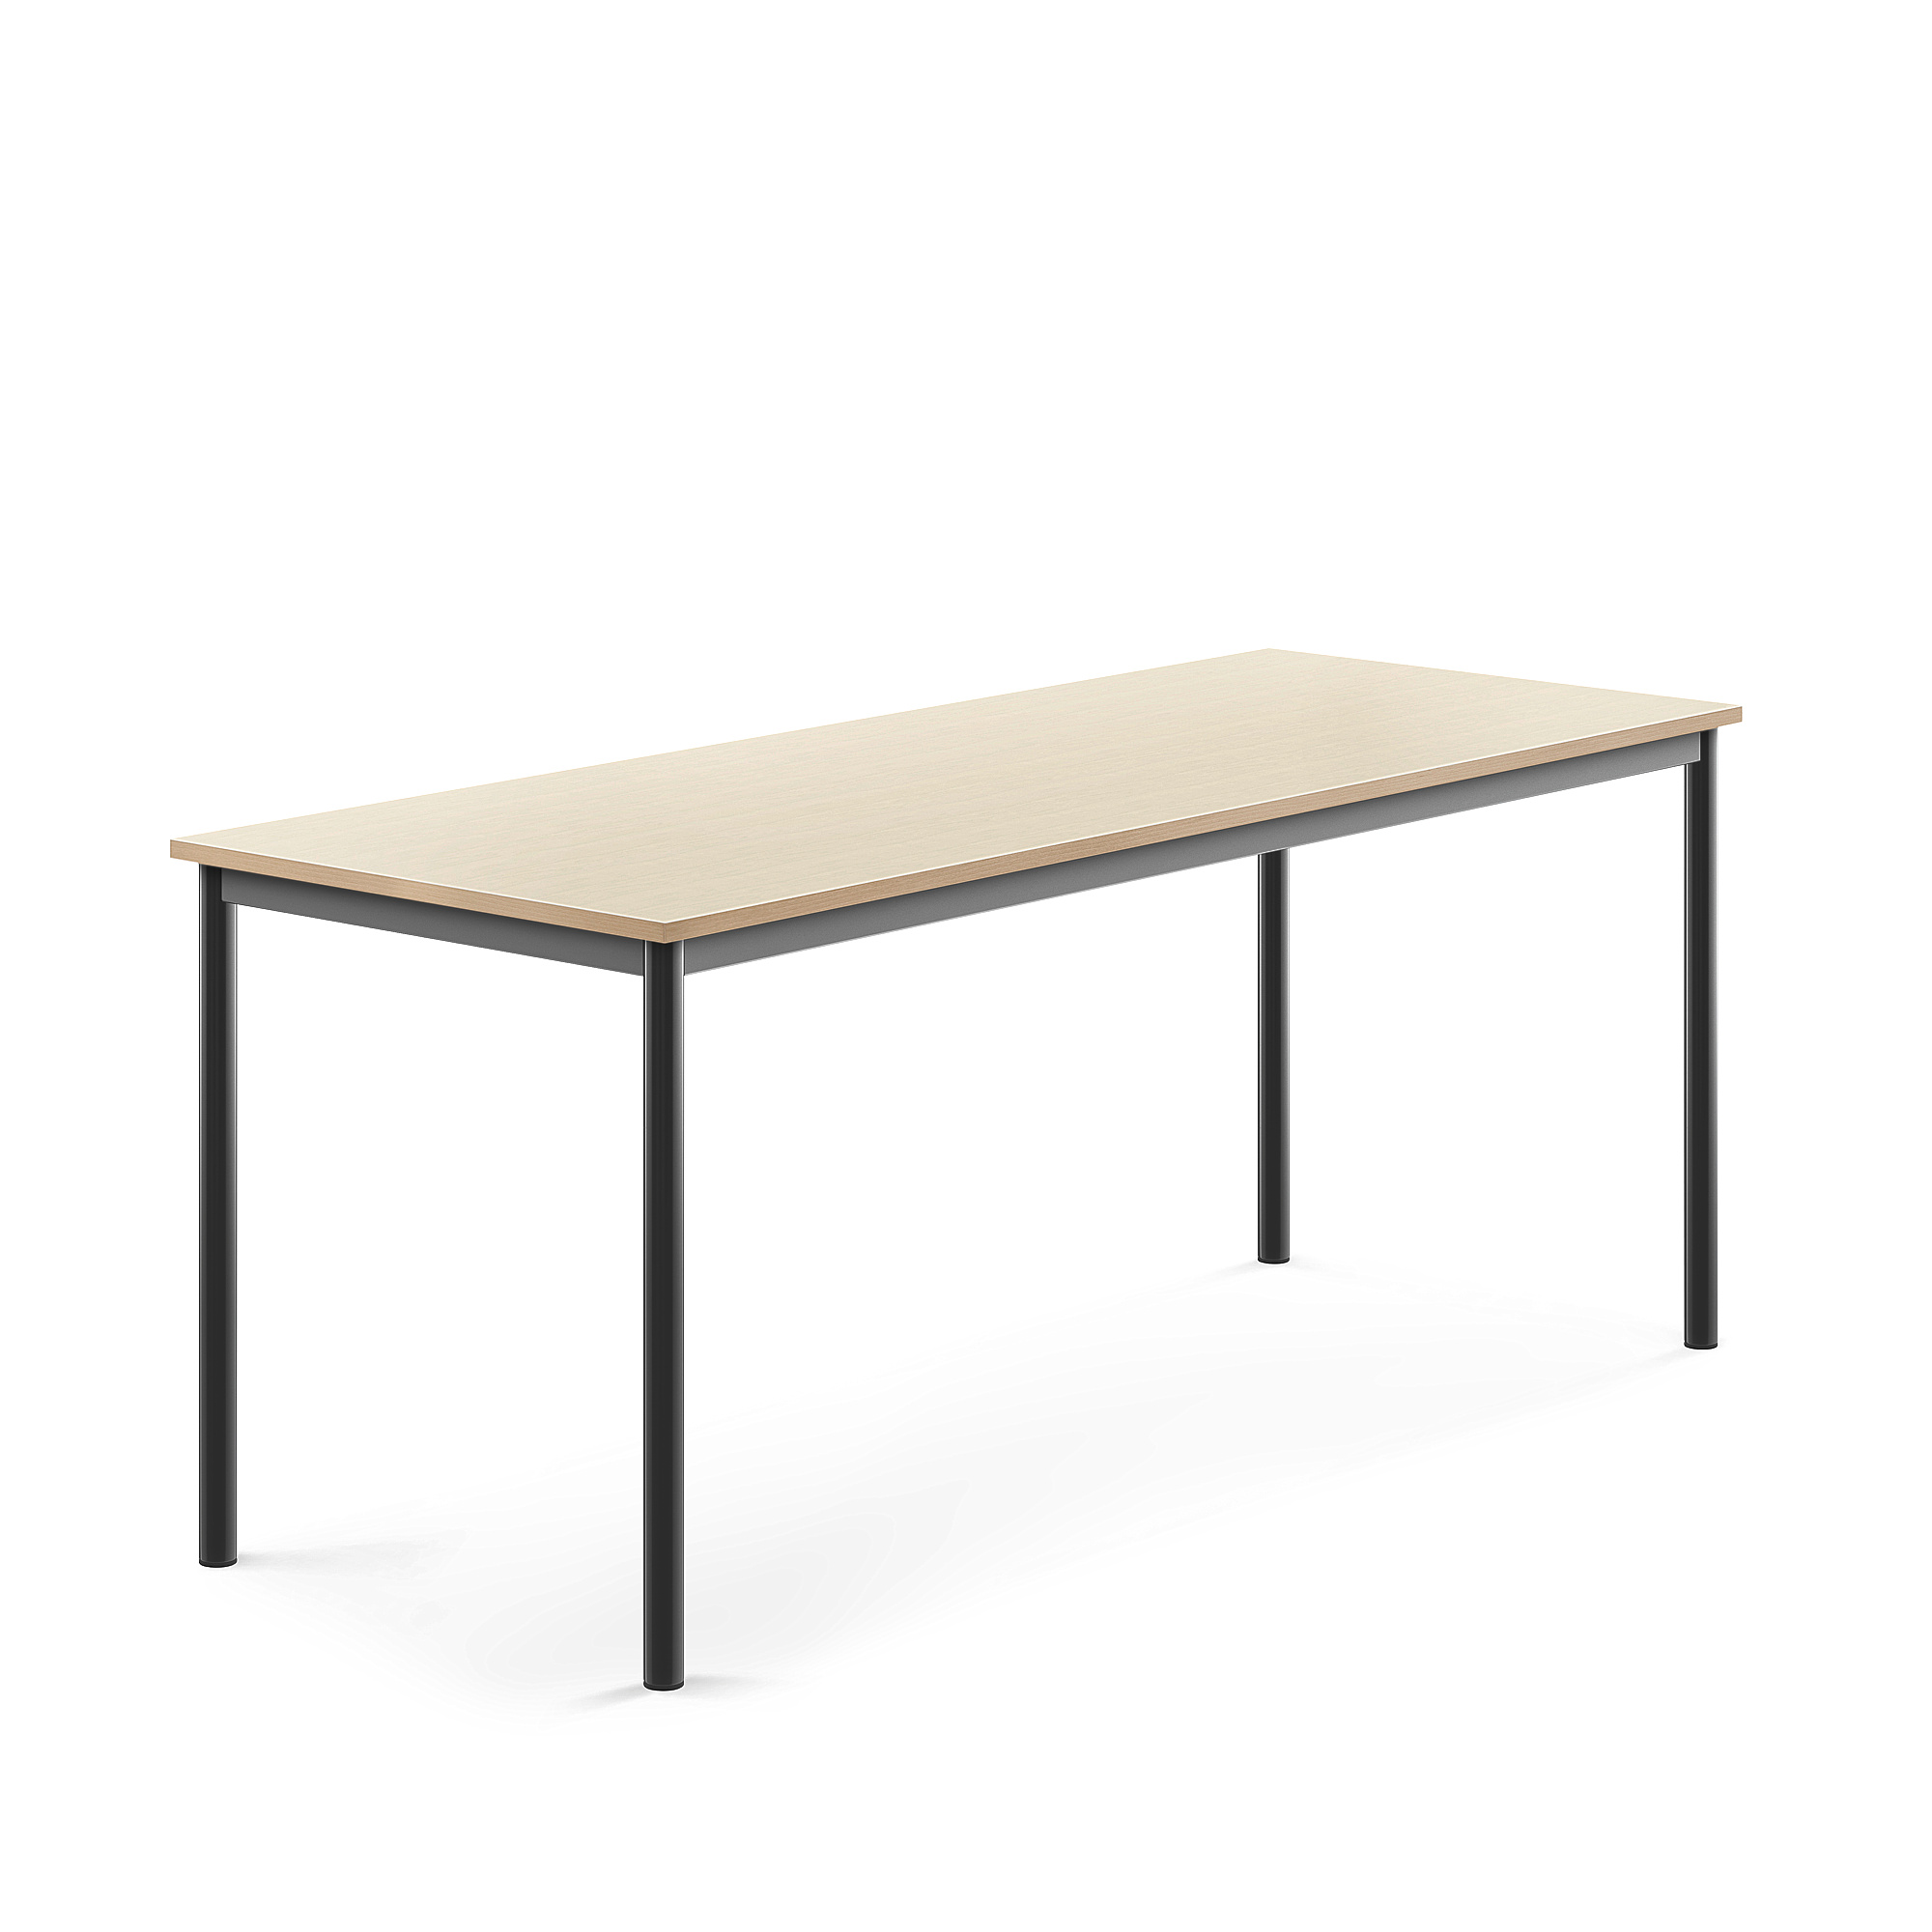 Stůl BORÅS, 1800x700x720 mm, antracitově šedé nohy, HPL deska, bříza